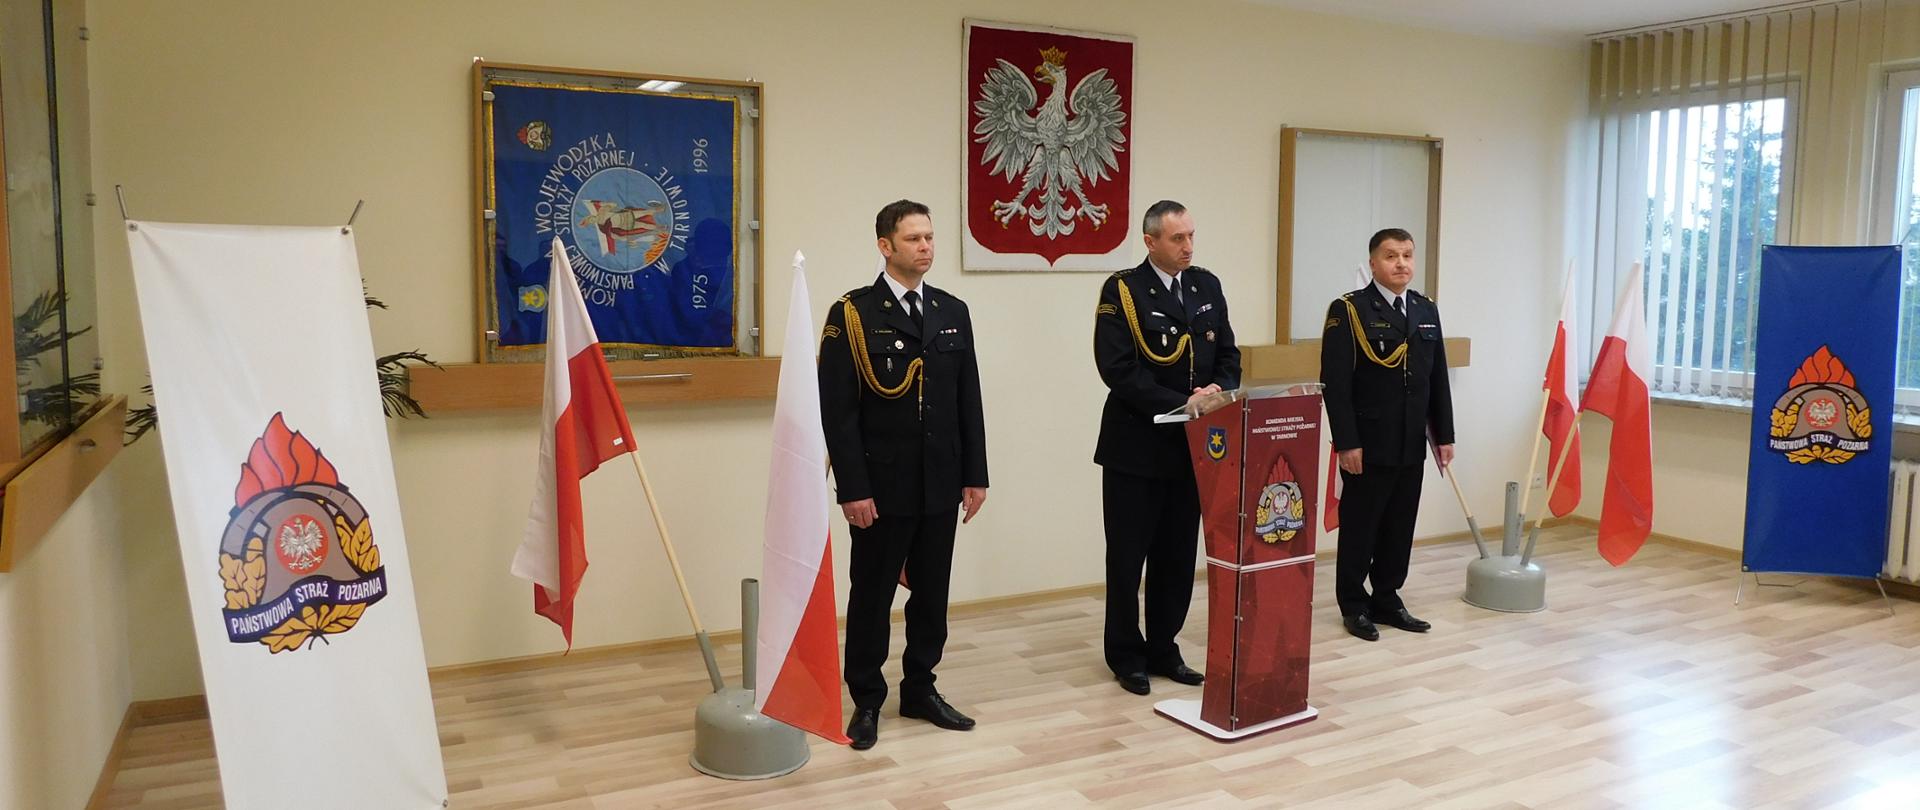 Na zdjęciu widoczni są 3 funkcjonariusze podczas przemówienia z prawej i lewej strony widoczne są flagi państwowe oraz loga PSP. Przemówienie ma miejsce na Sali narad KM PSP w Tarnowie.